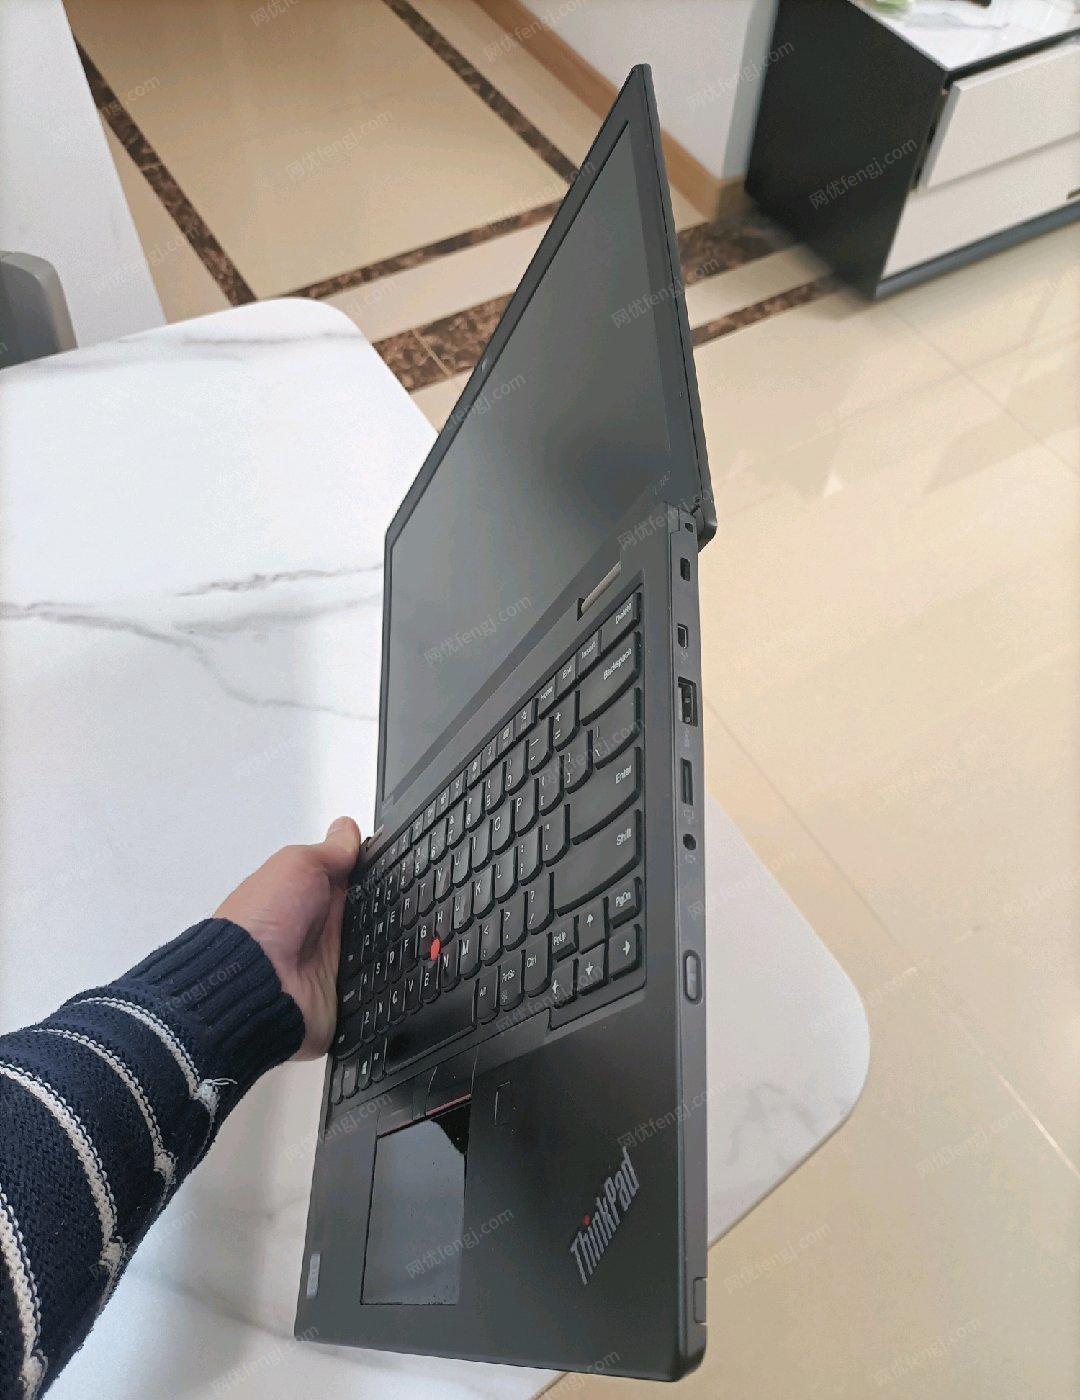 广西南宁13.3寸经典轻薄商务笔记本电脑 低价出售